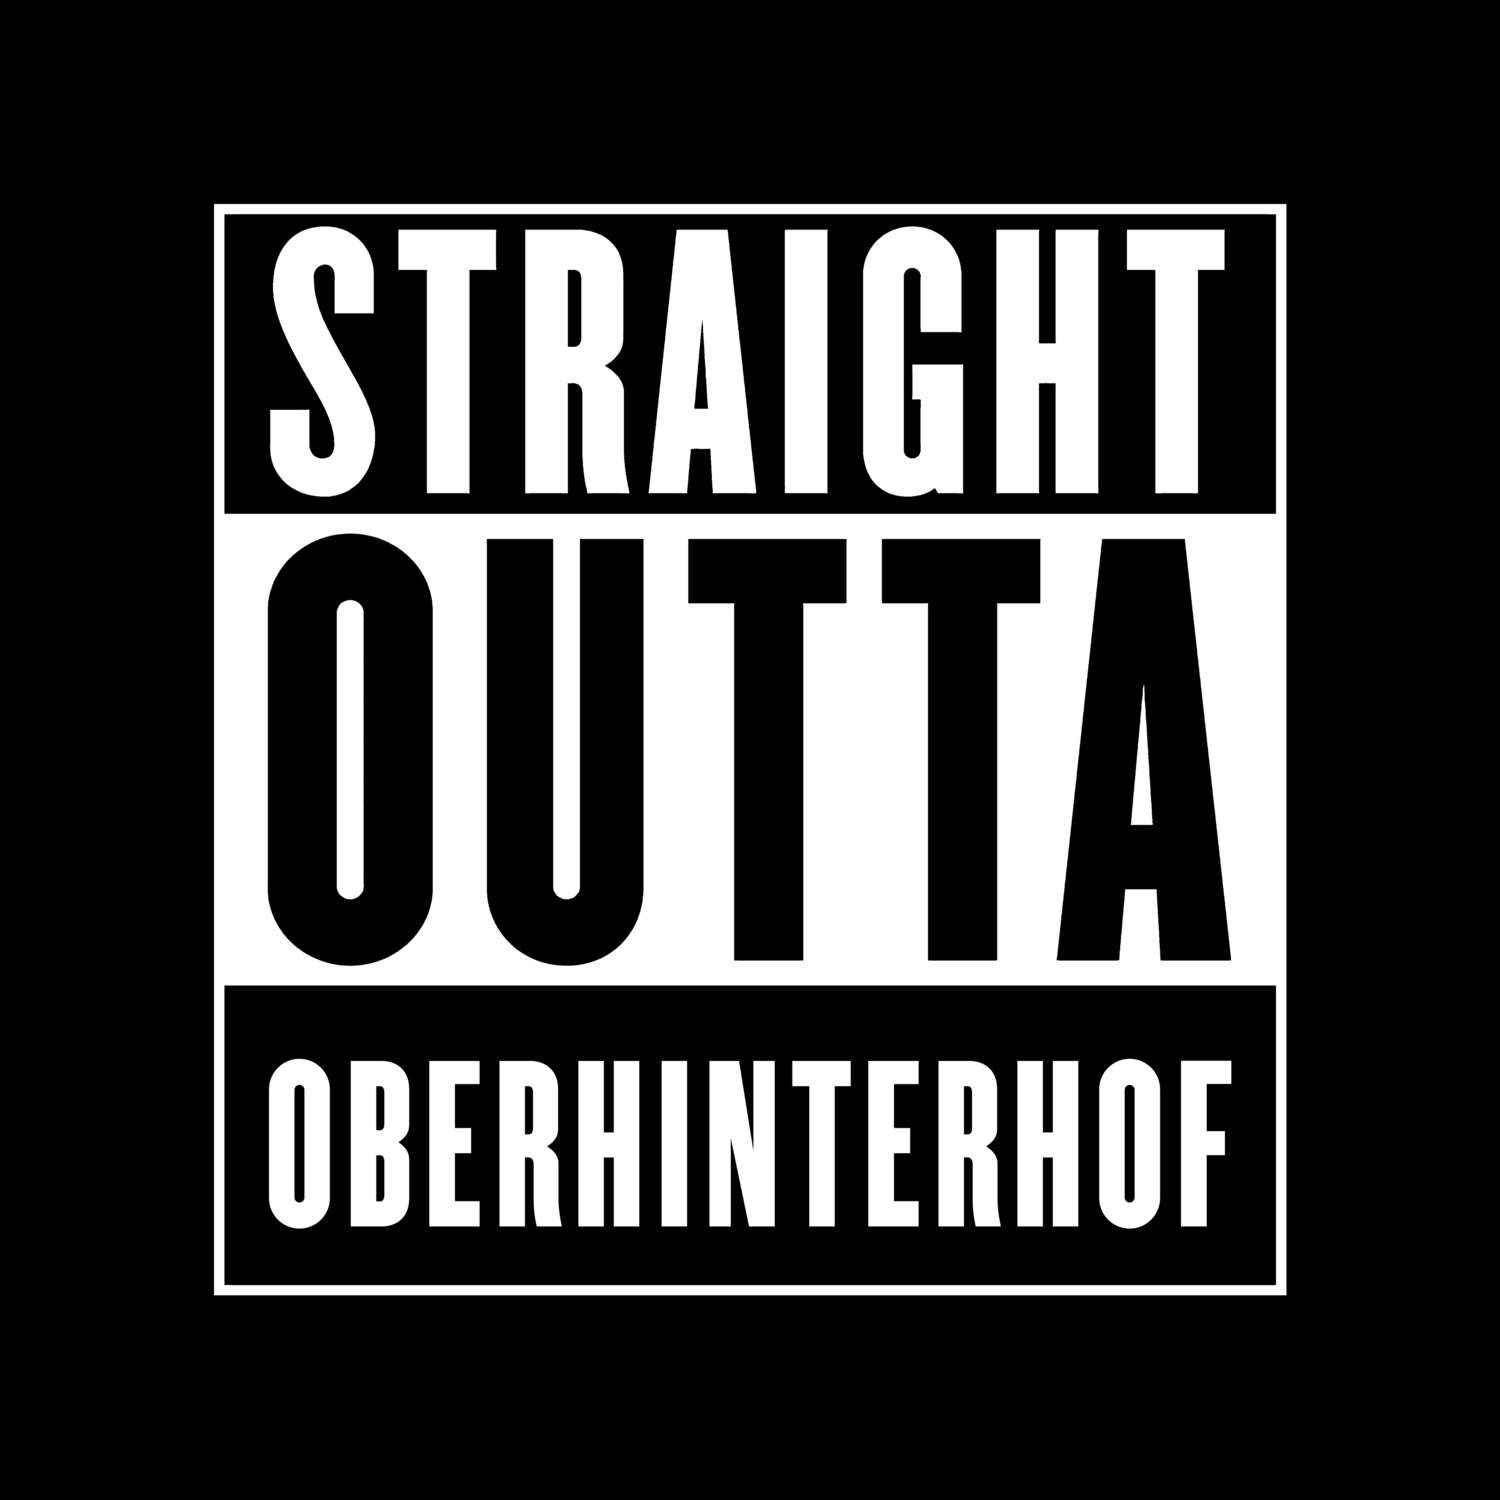 Oberhinterhof T-Shirt »Straight Outta«